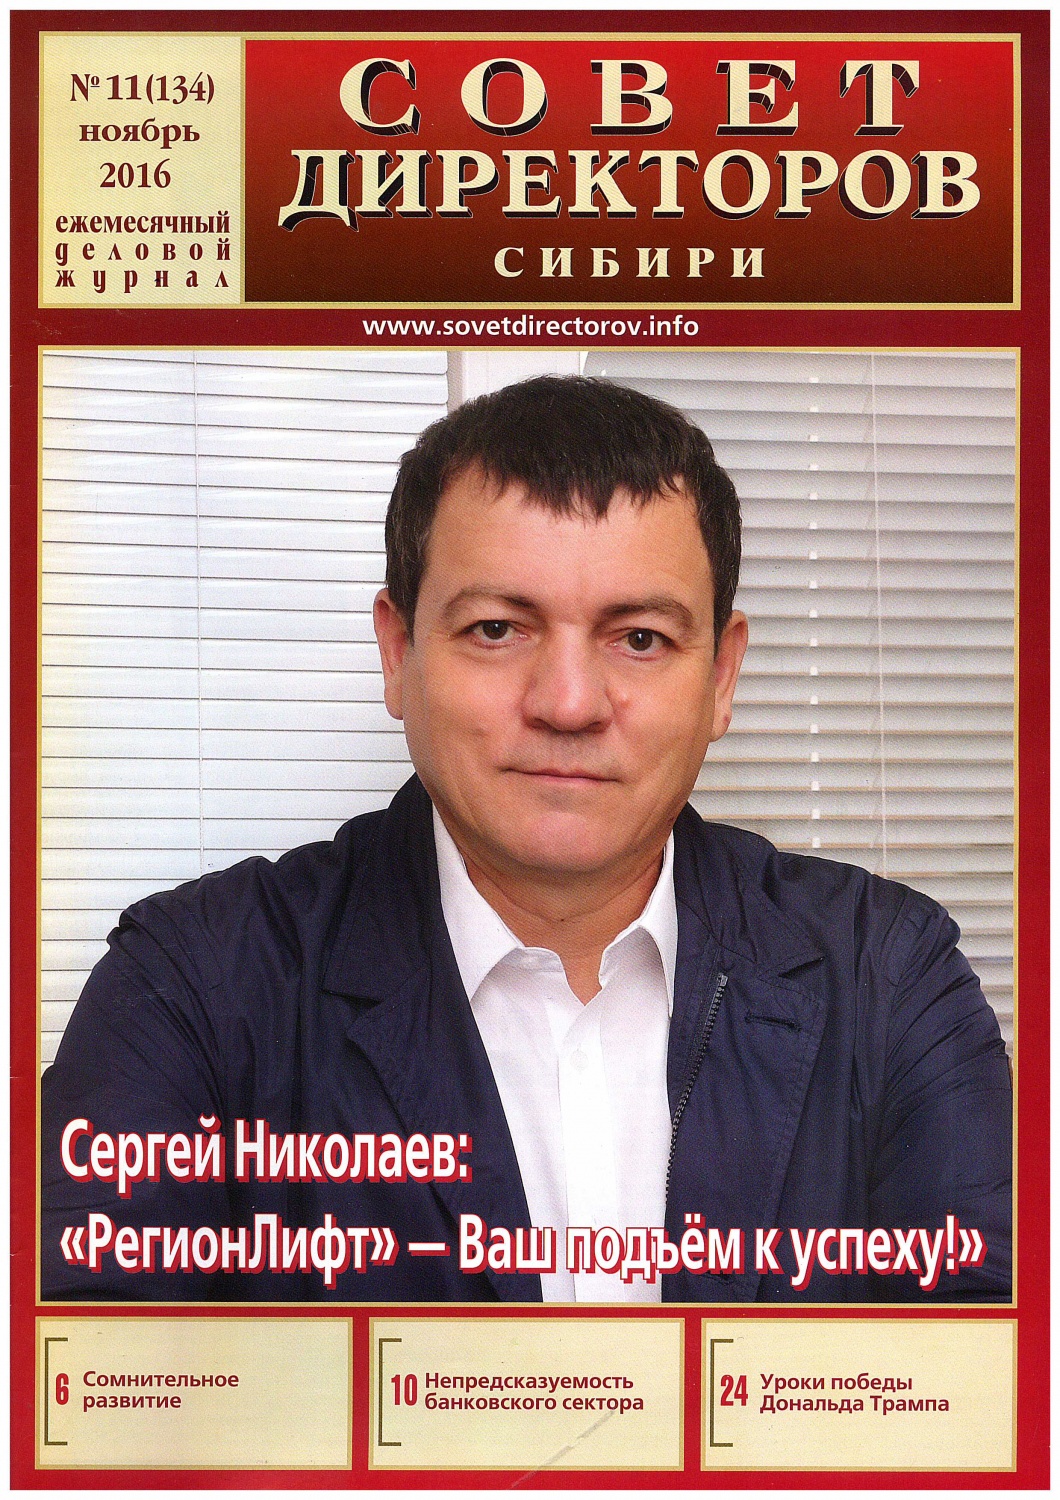 Совет директоров сибири 2016